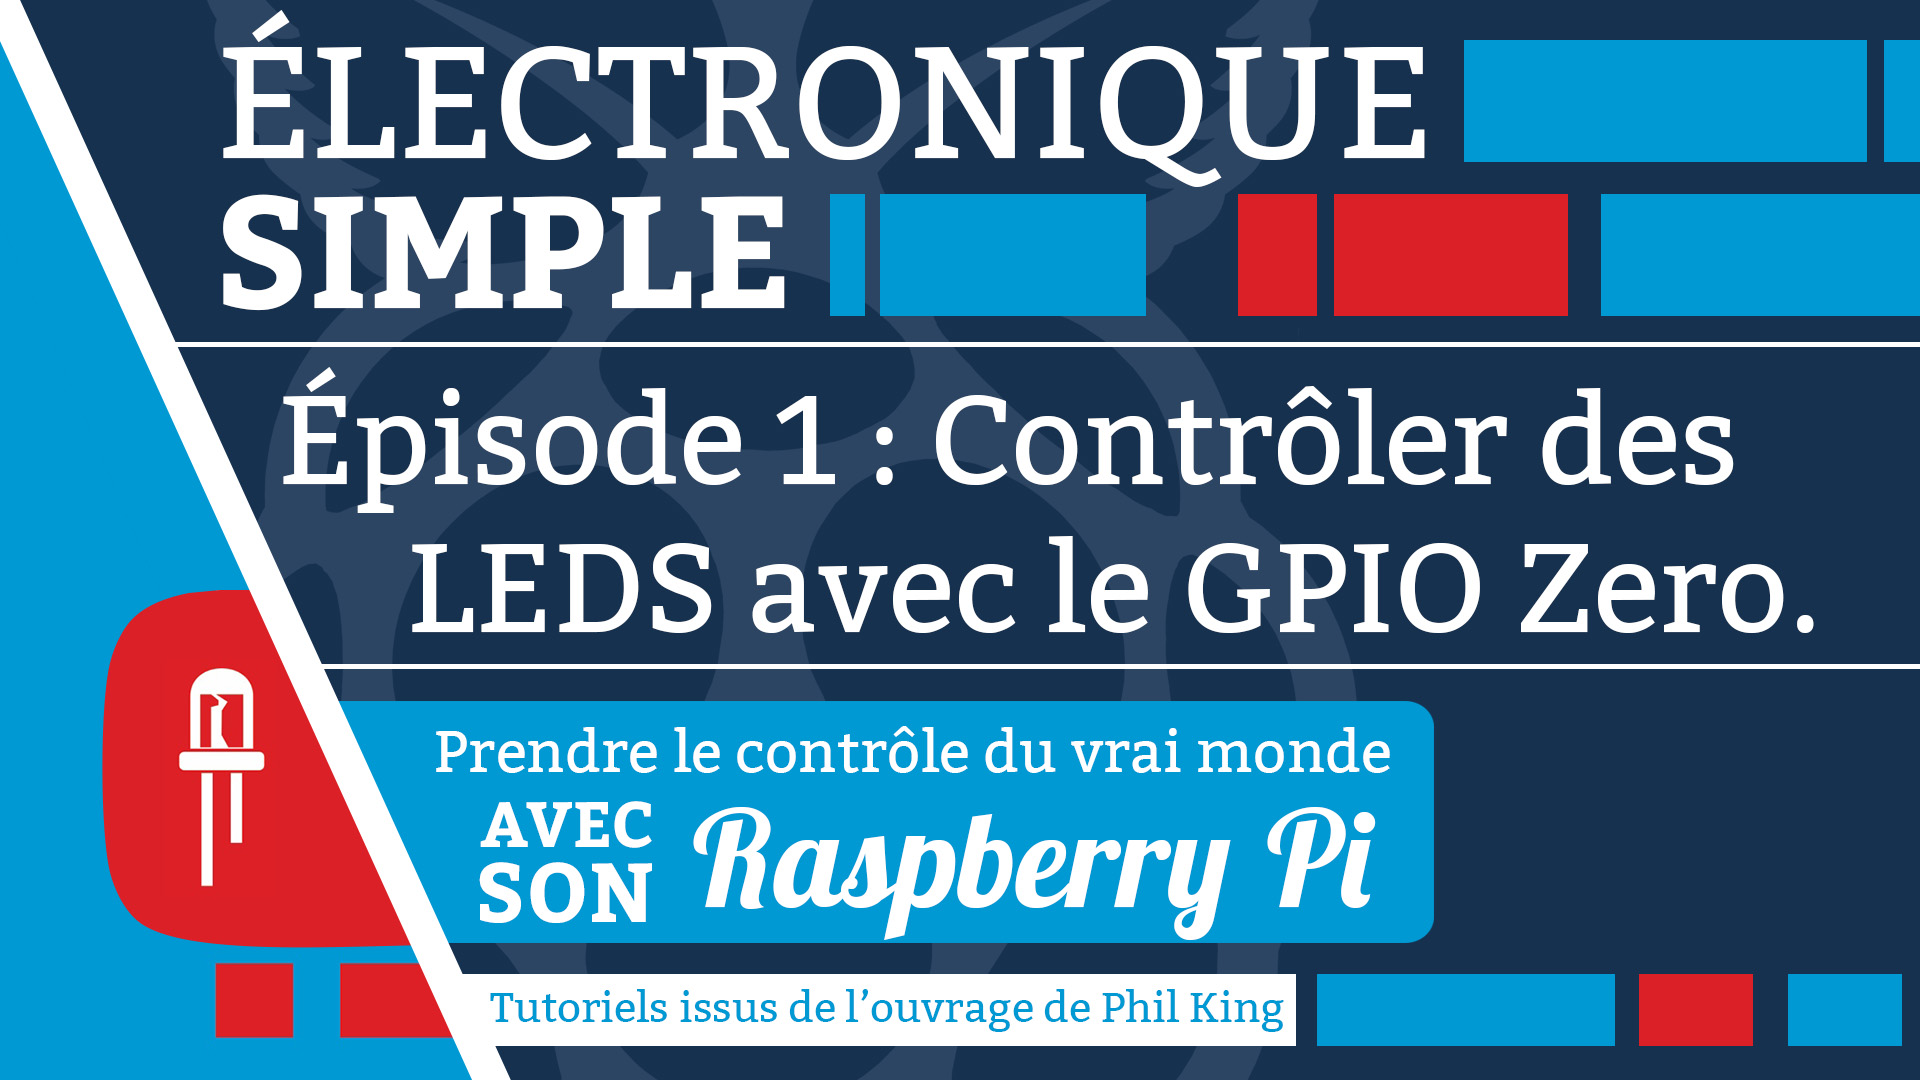 Ã©lectronique facile sur raspberry pi, Ã©pisode 1 : contrÃ´ler des LEDS